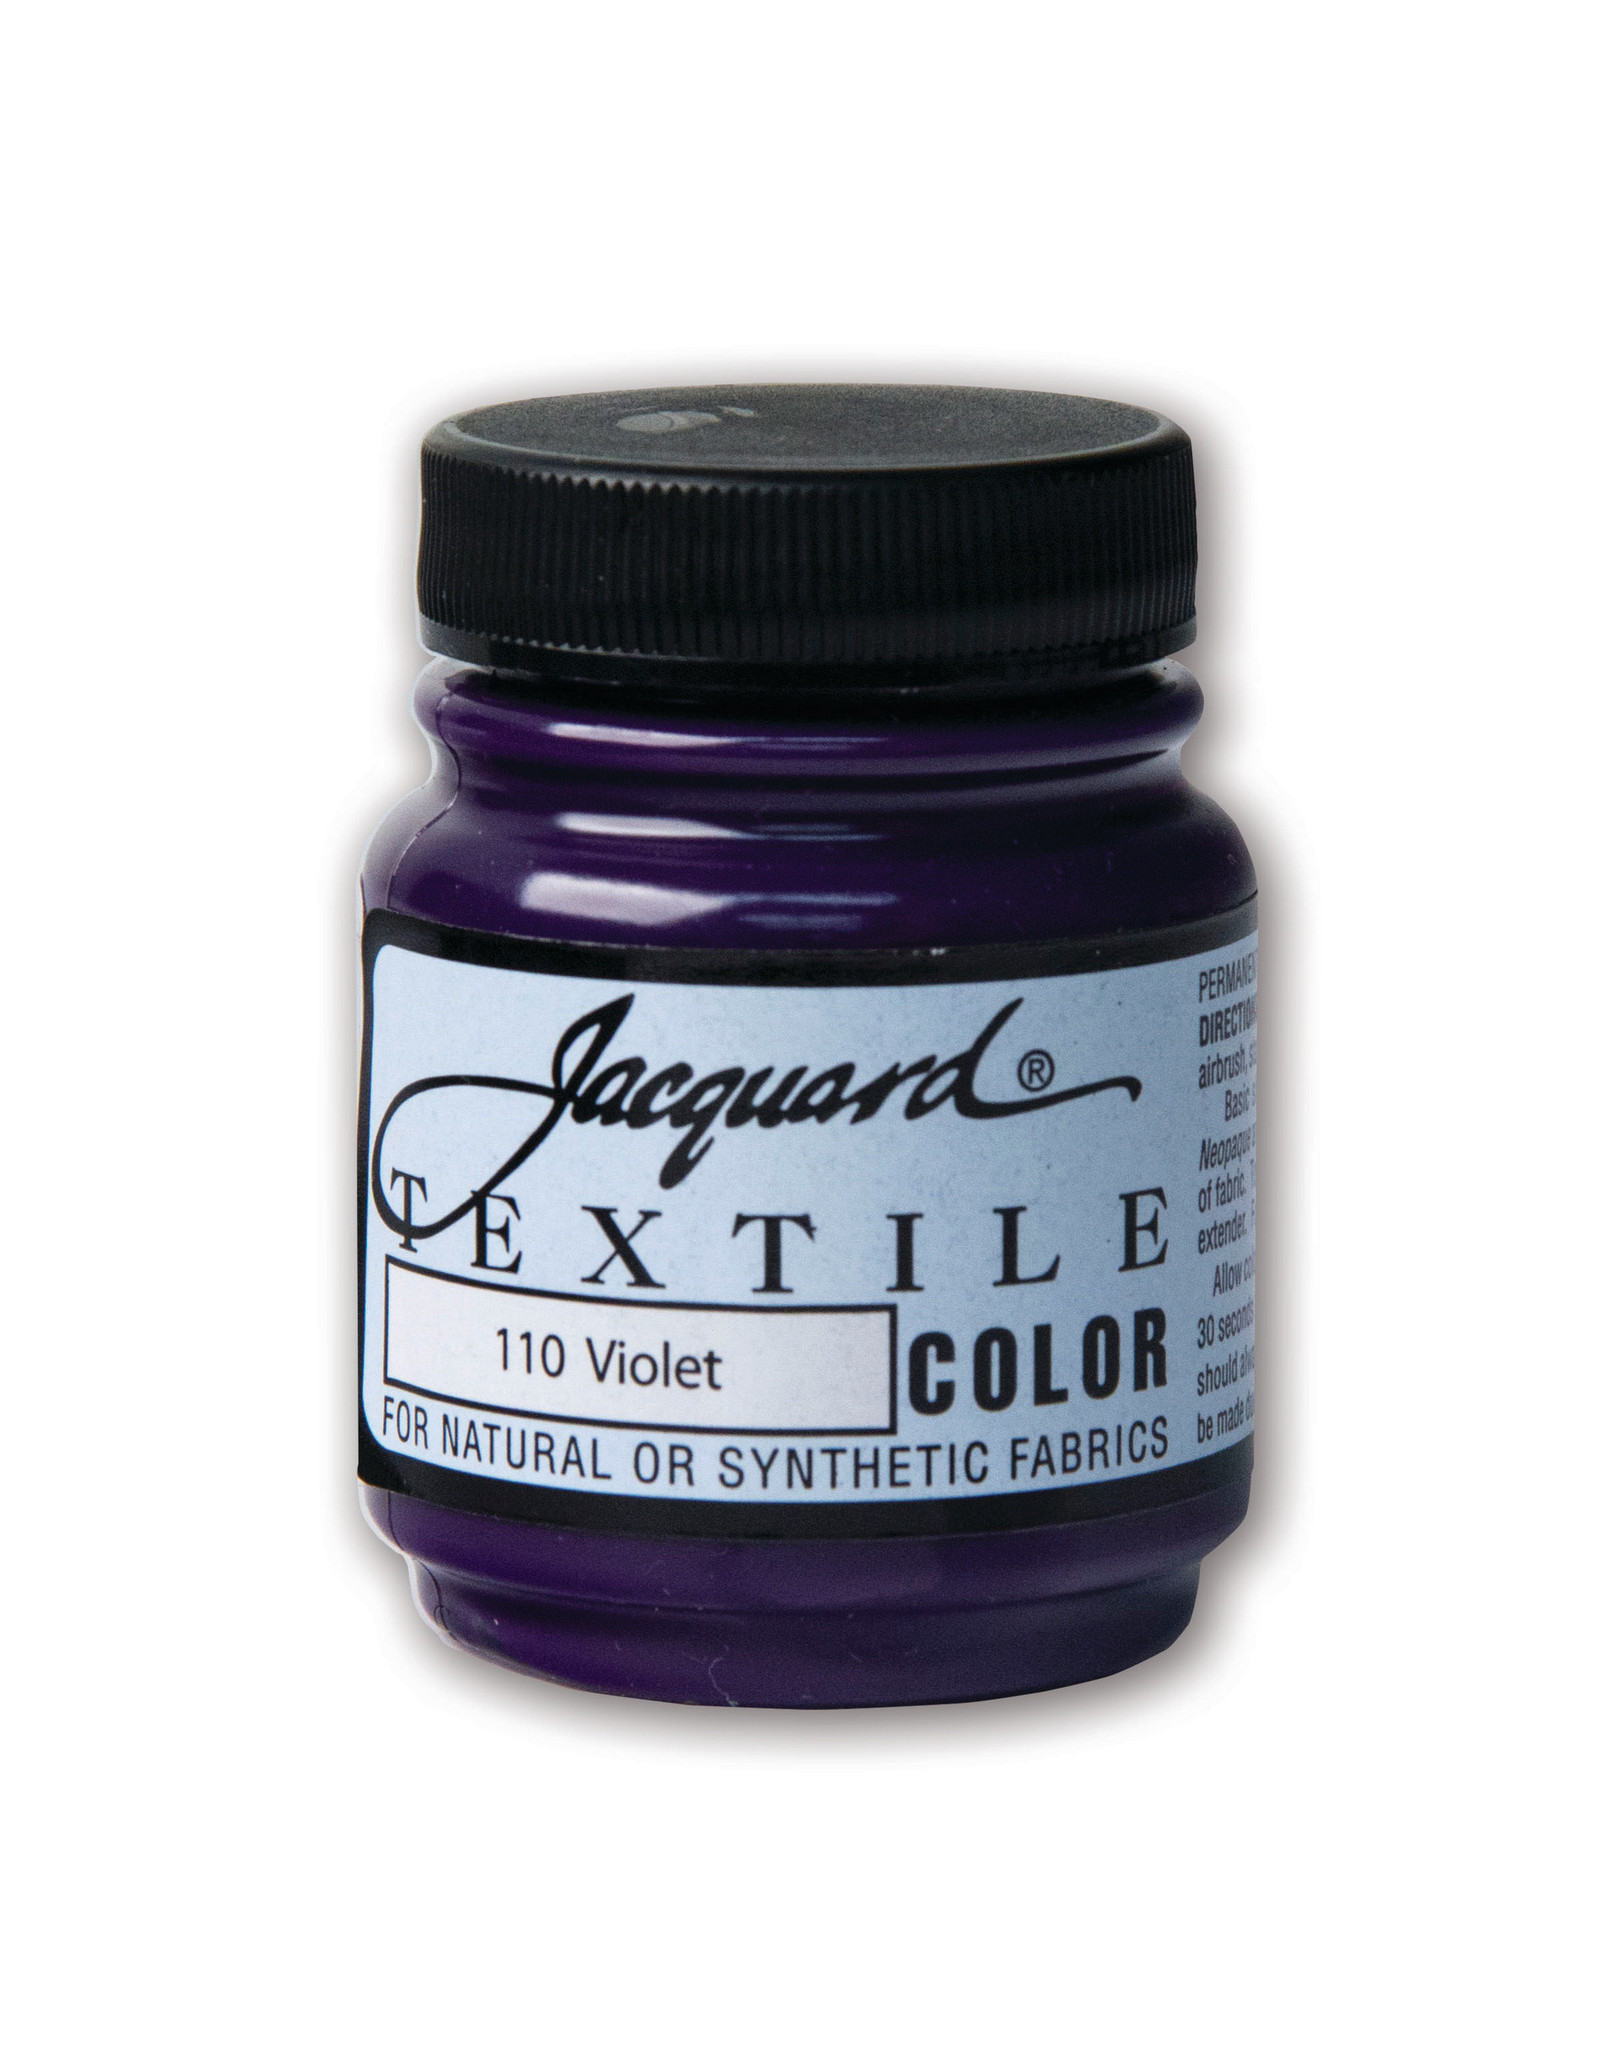 Jacquard Jacquard Textile Color, #110 Violet